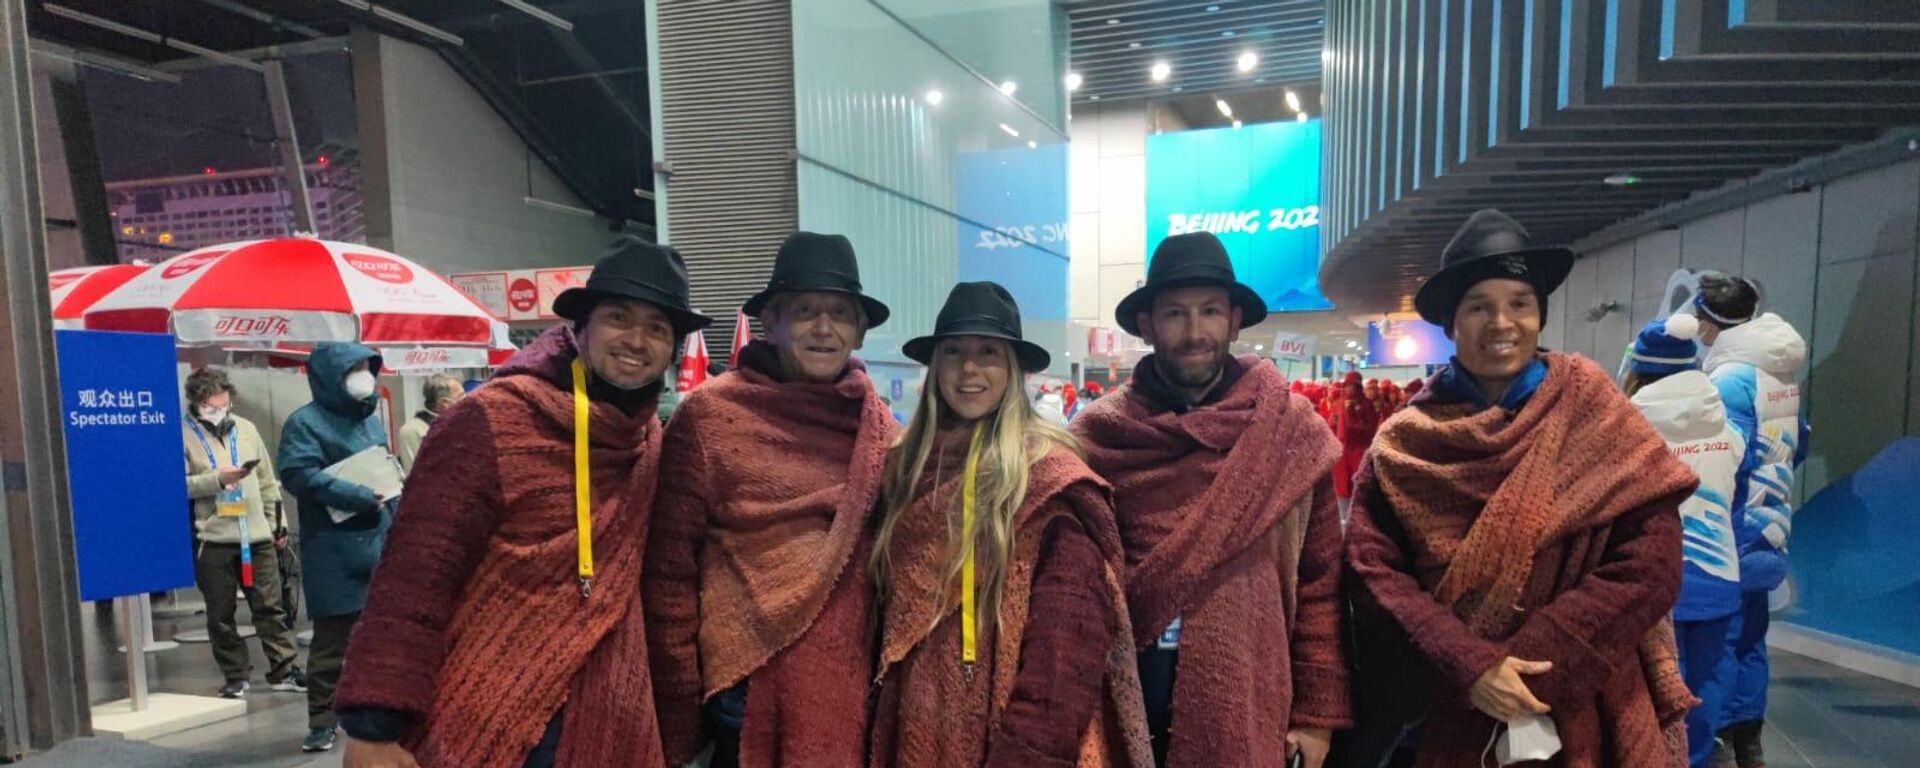 La delegación colombiana que desfiló en la inauguración de los Juegos Olímpicos de Invierno llevando sus ruanas boyacenses - Sputnik Mundo, 1920, 16.02.2022